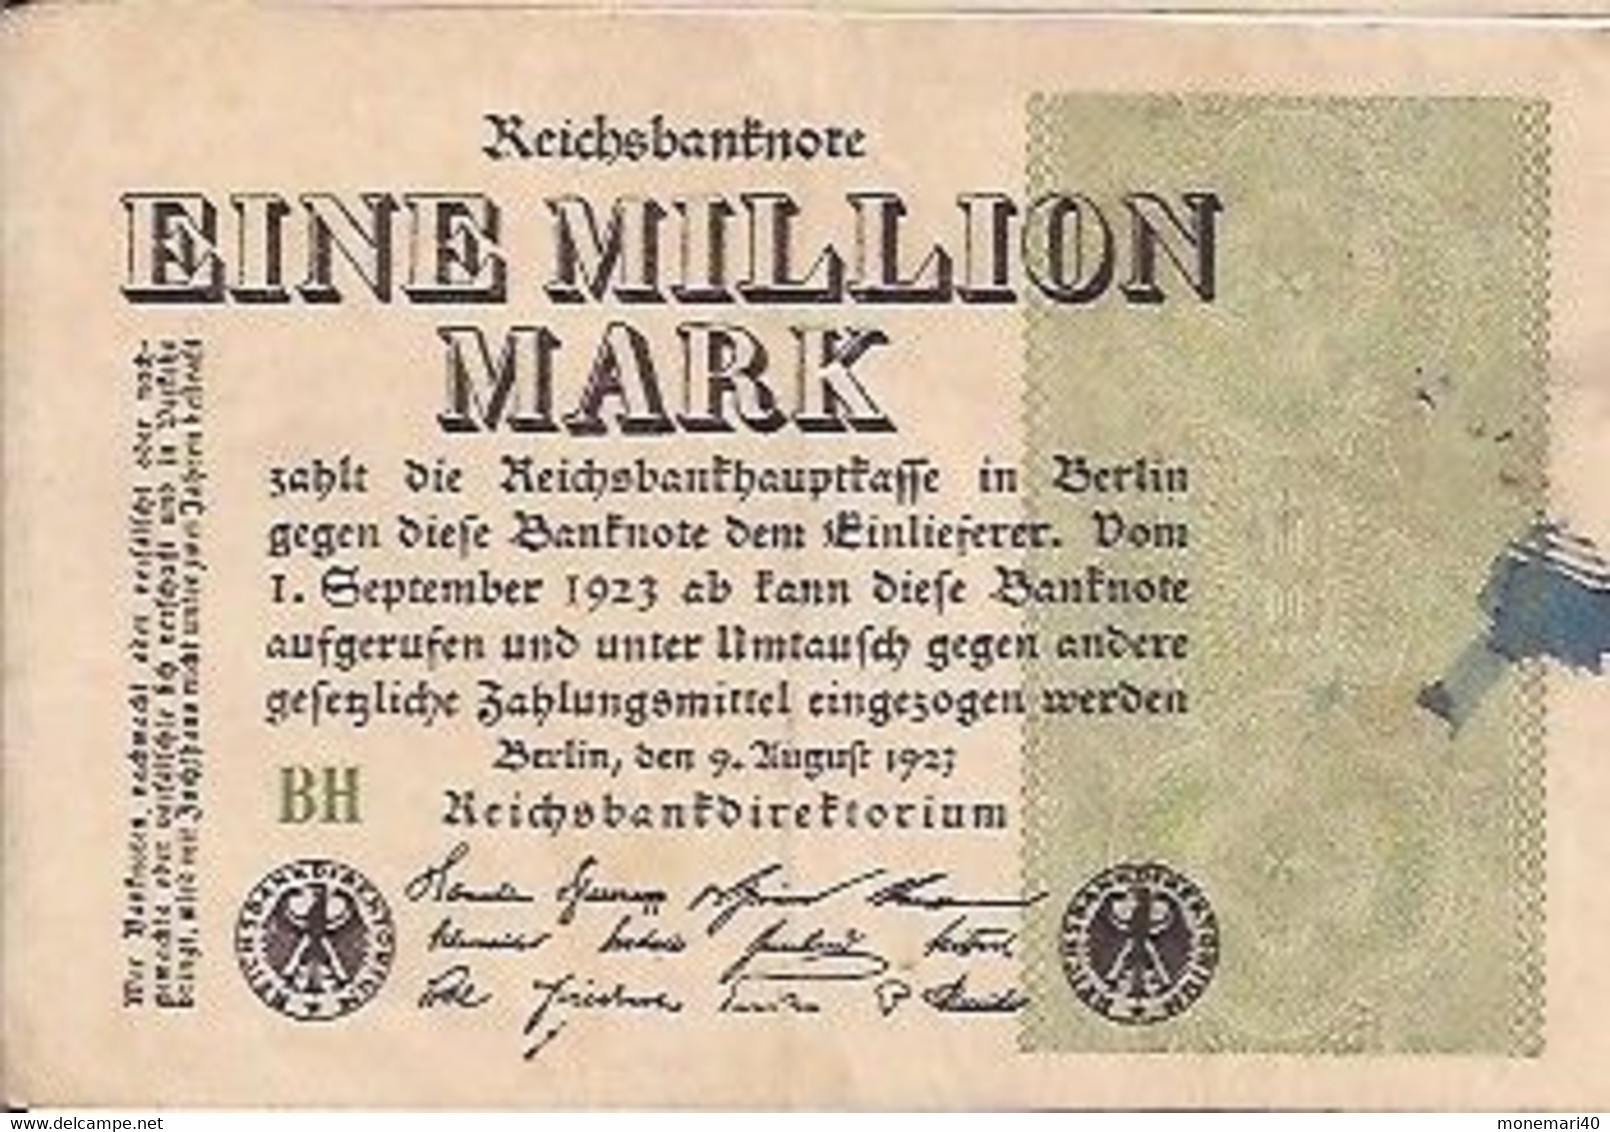 ALLEMAGNE - EINE MILLION MARK (1.000.000) - BH - 9 AOÛT 1923 - REICHSBANKNOTE - 1000 Mark